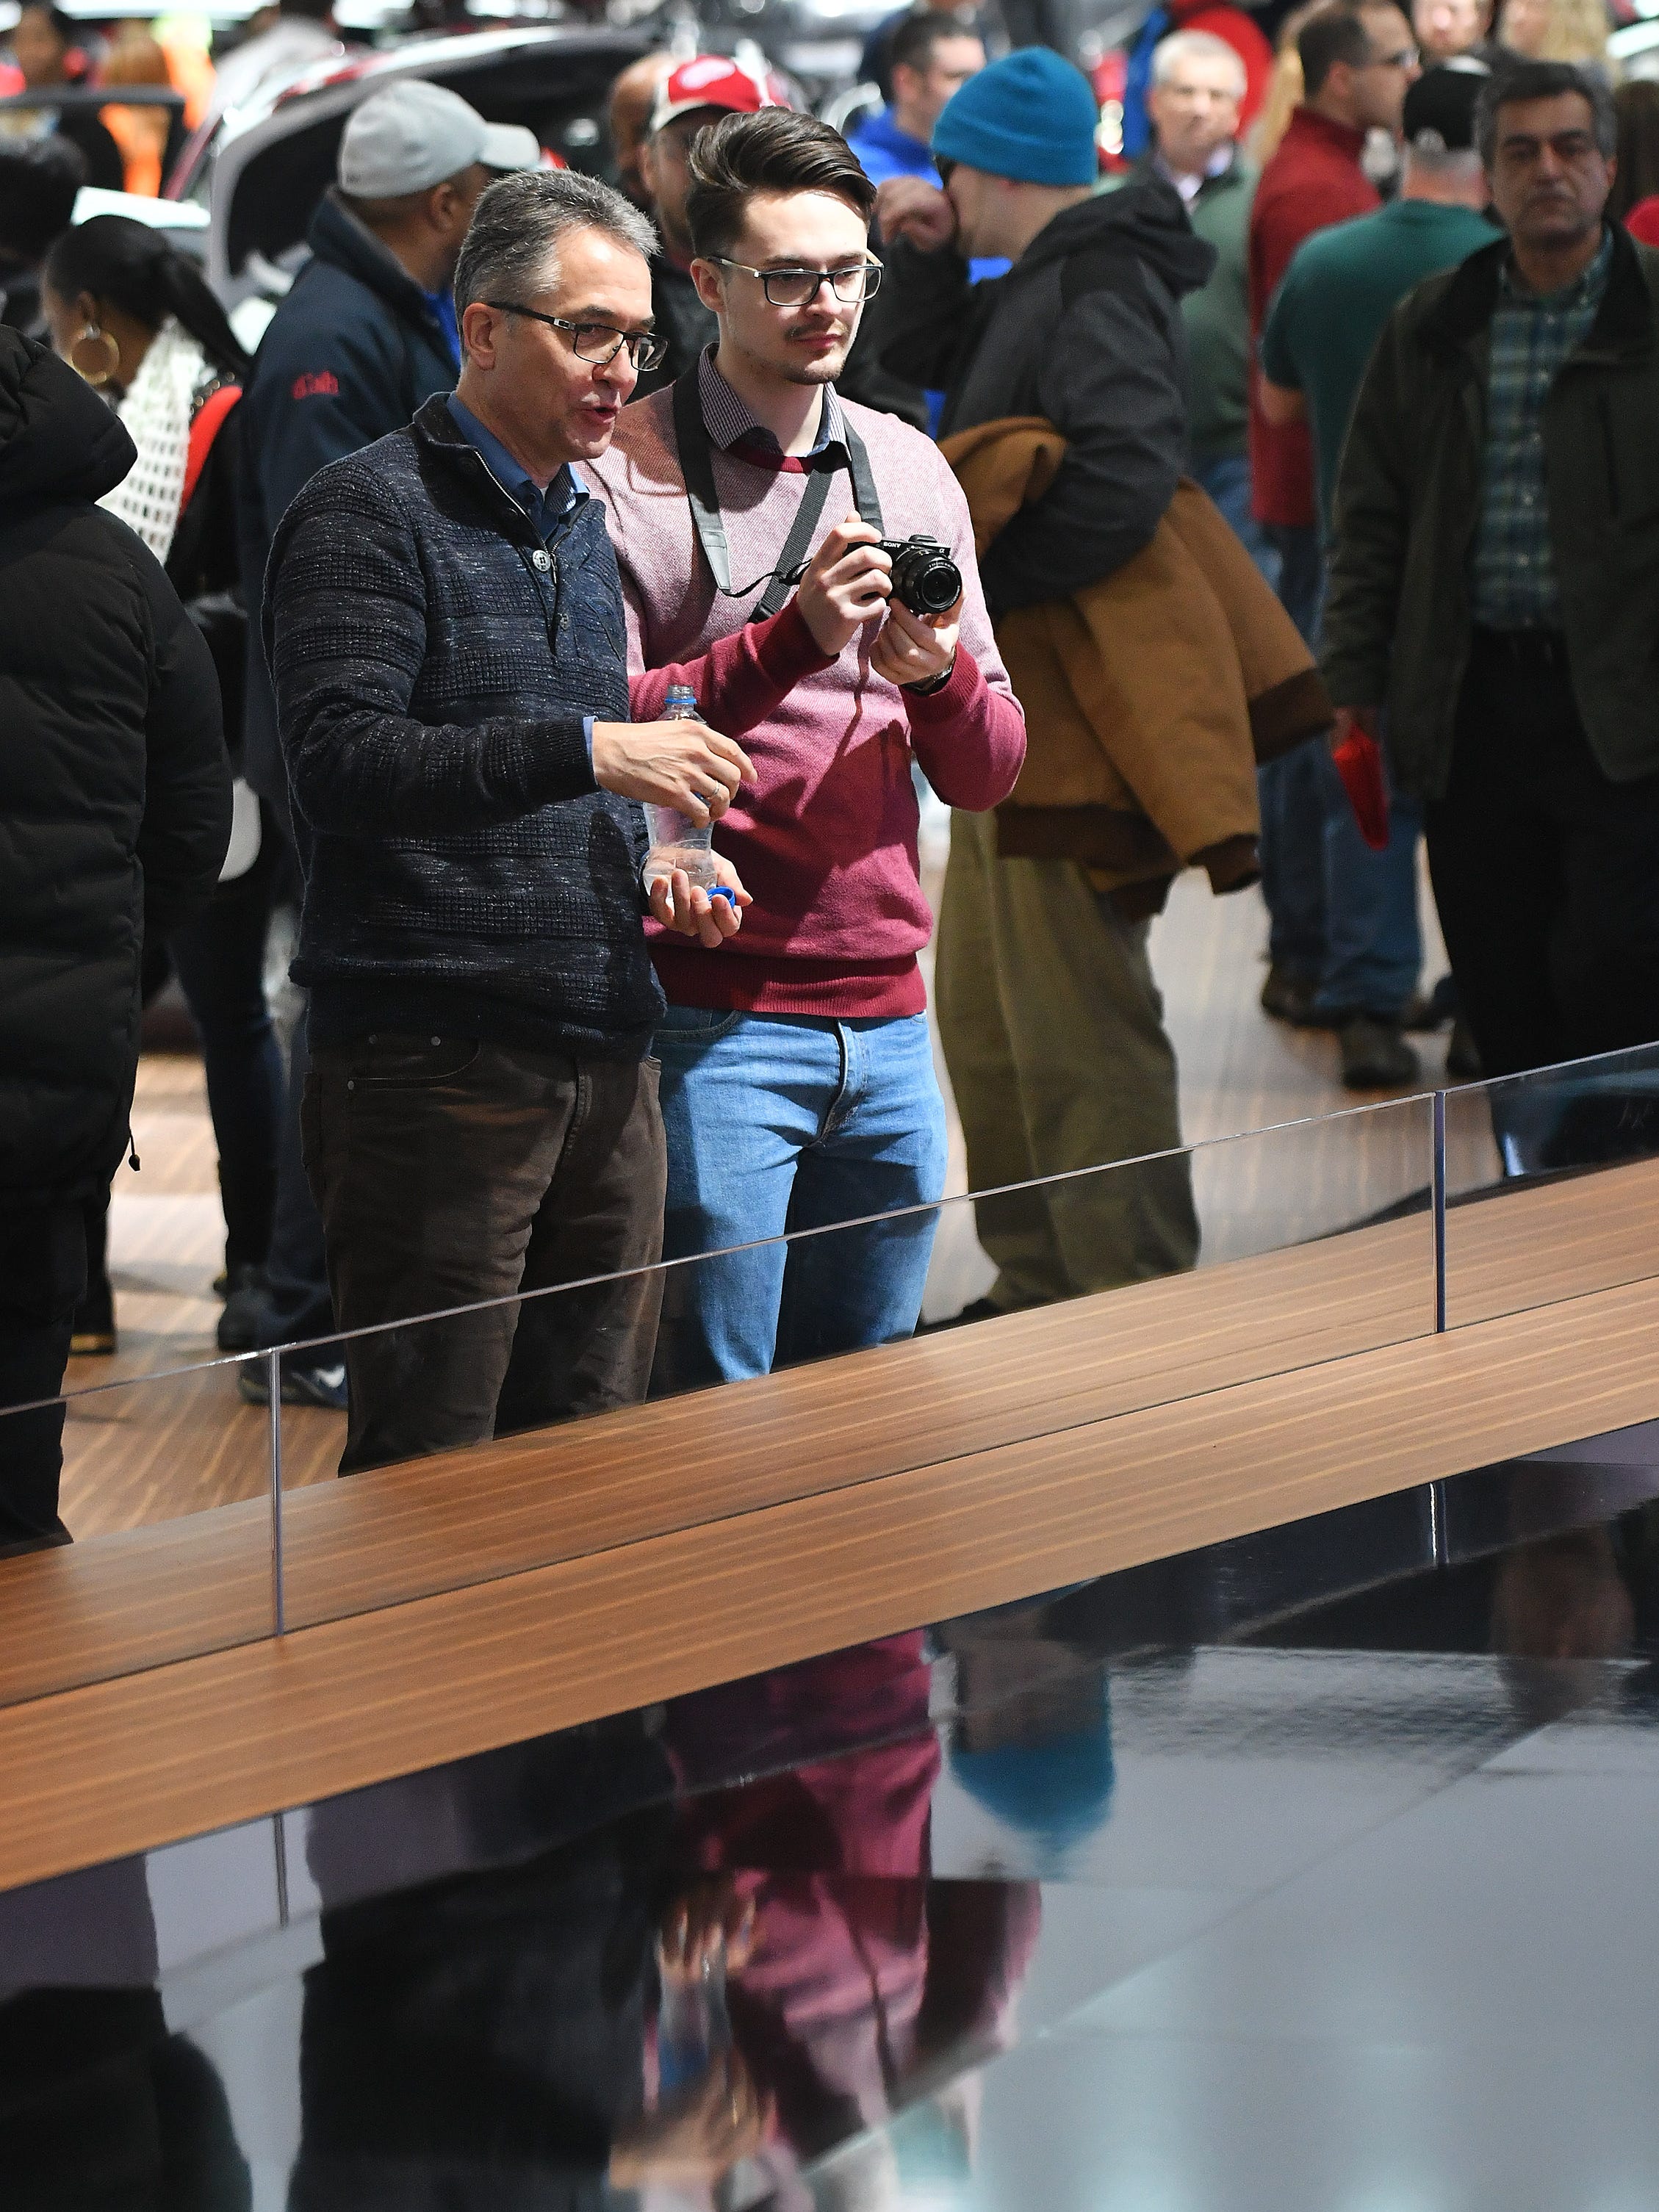 Dieter Hirmke, left, and his son, Sebastian Hirmke look at the Infiniti display.